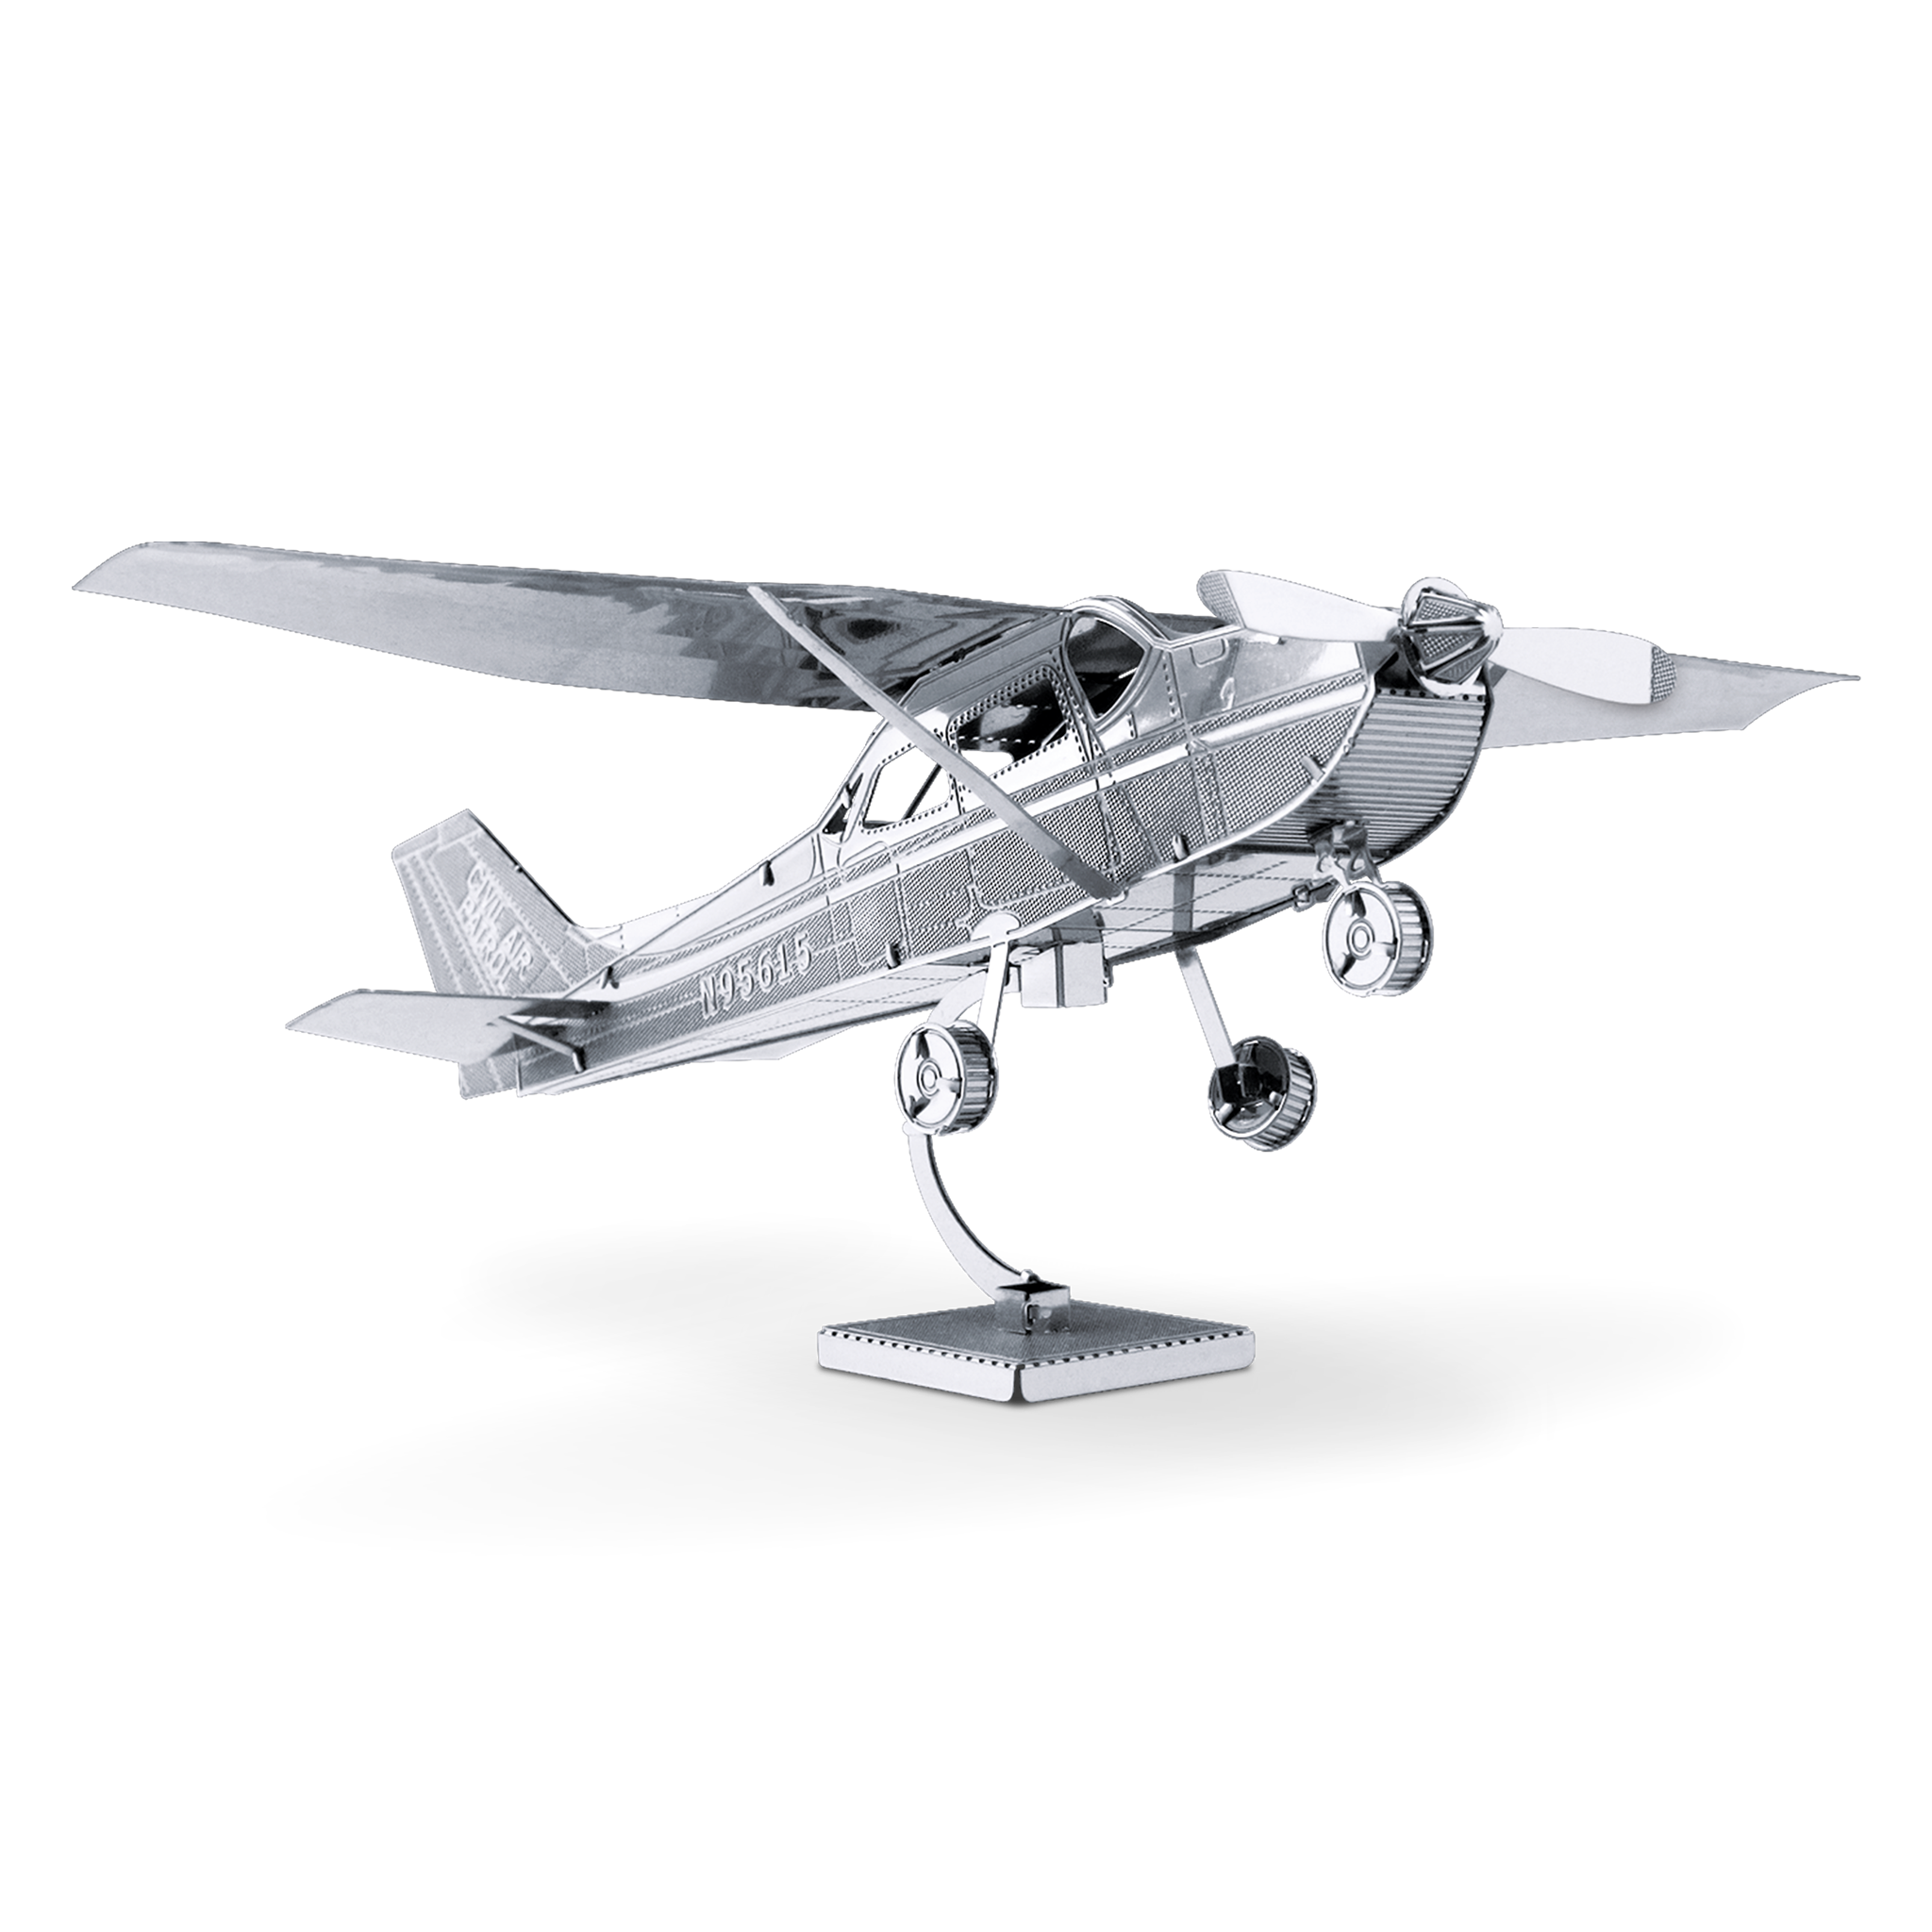 Металлическая модель самолета. Цесна 172s. Метолические модели самолётов. Сборные металлические модели самолетов. Металлический 3д пазл самолет.